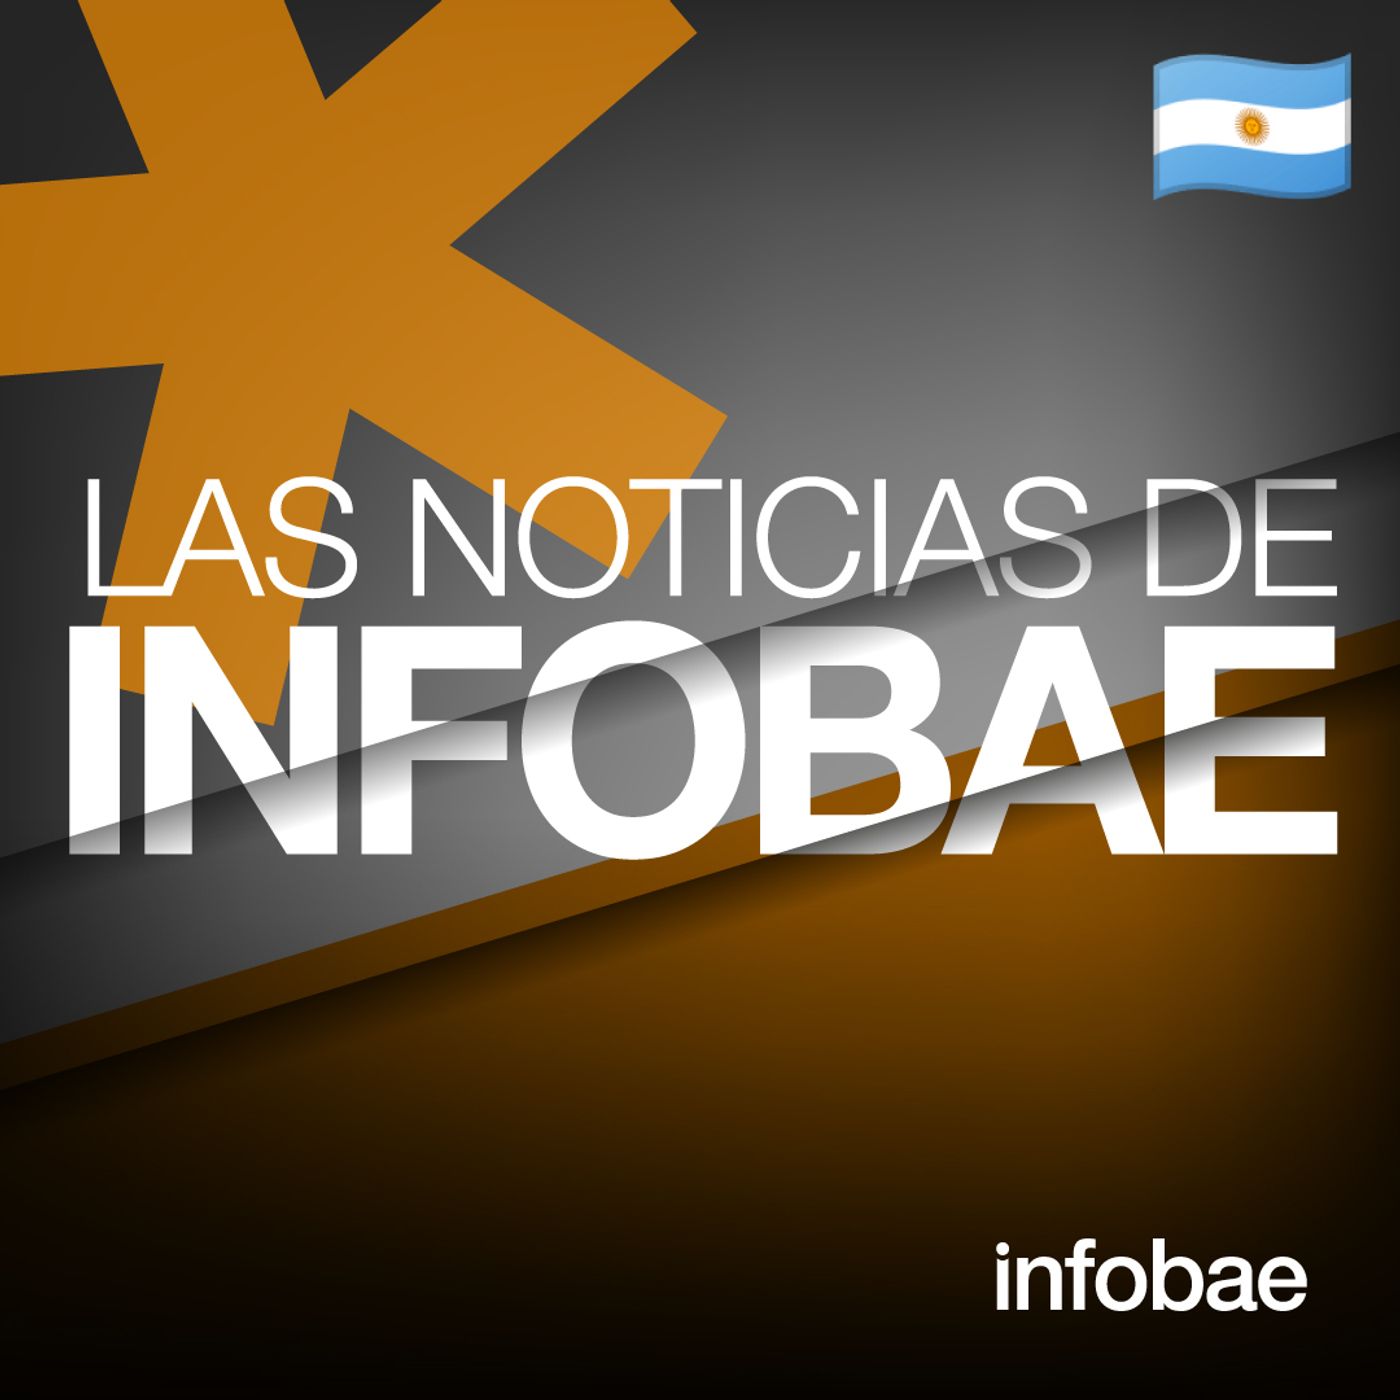 545: Las Noticias de Infobae (AR)